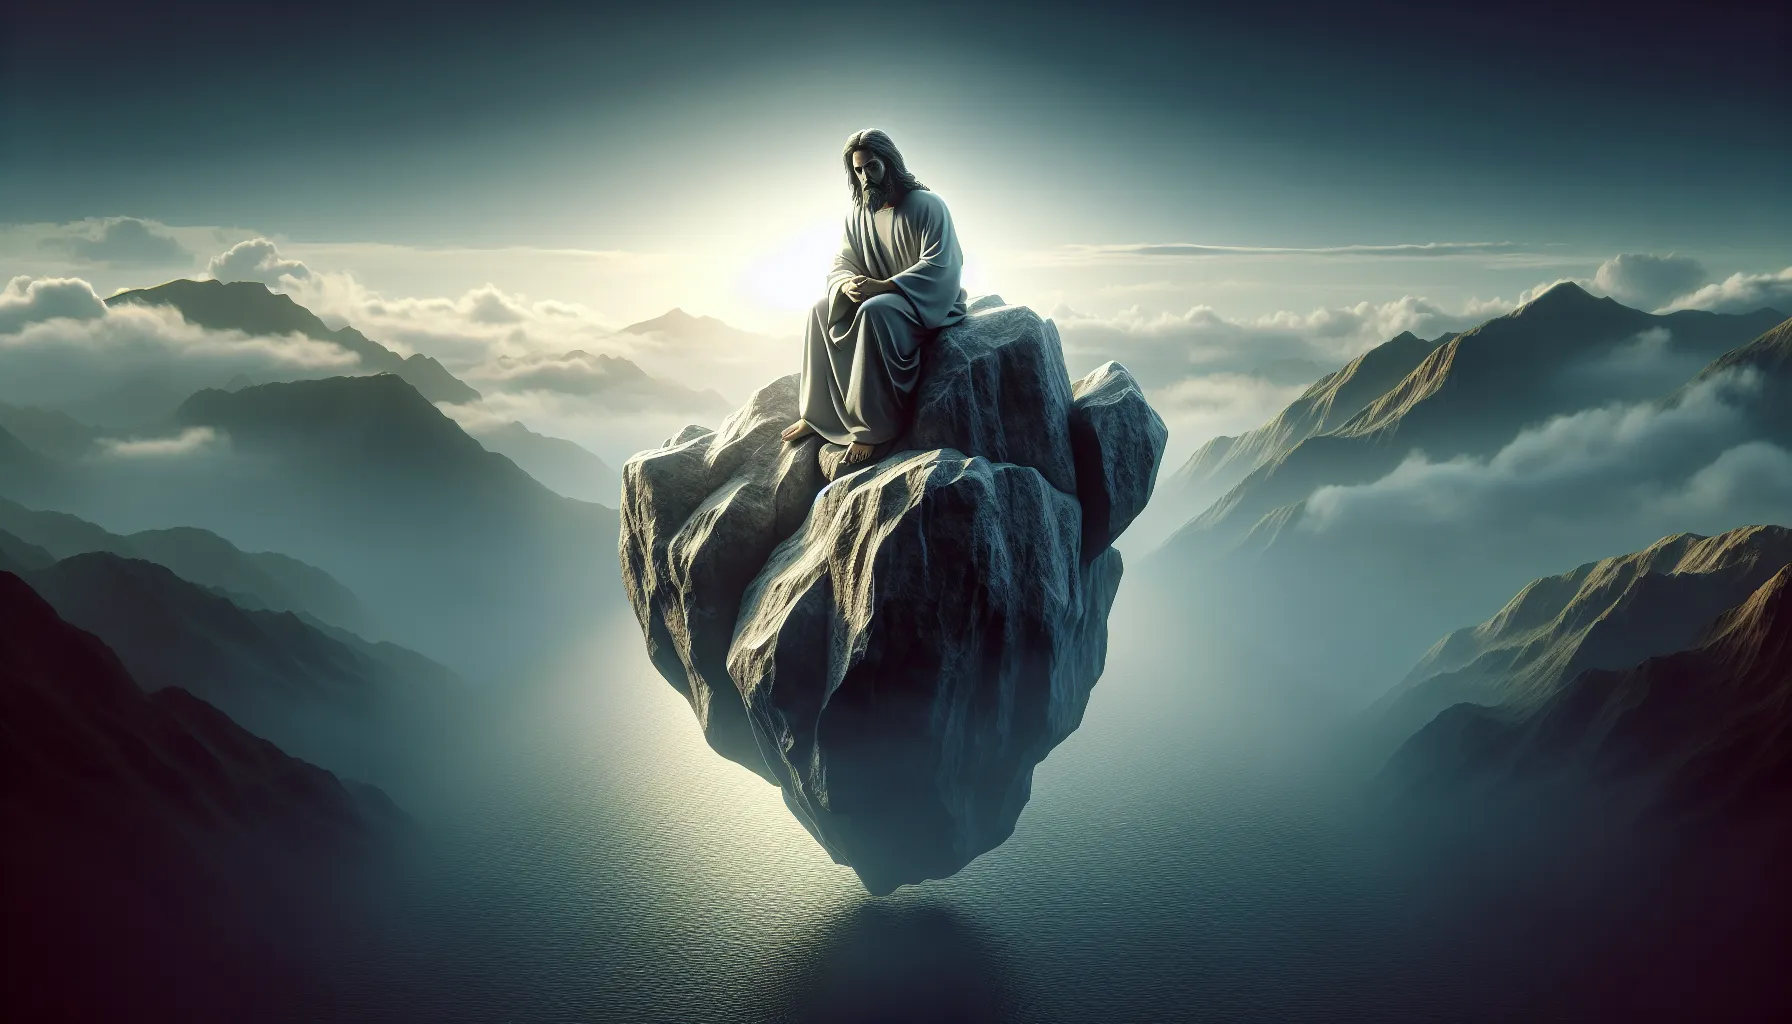 Imagen de Jesucristo como la roca, representada con solidez y fortaleza, en referencia a Mateo 16:18.